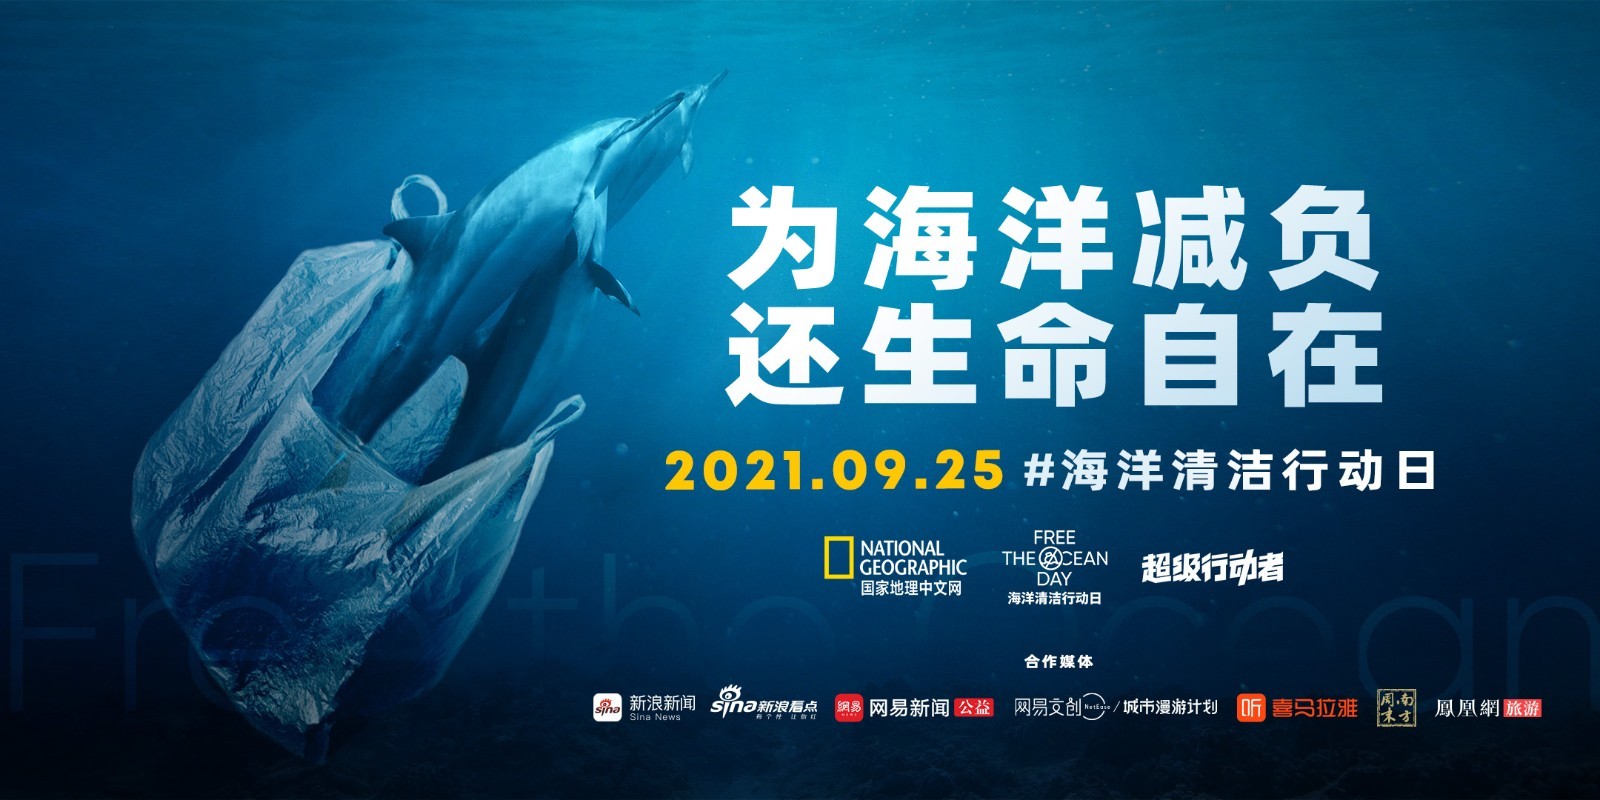 国家地理中文网暨华夏地理正式启动海洋清洁行动日